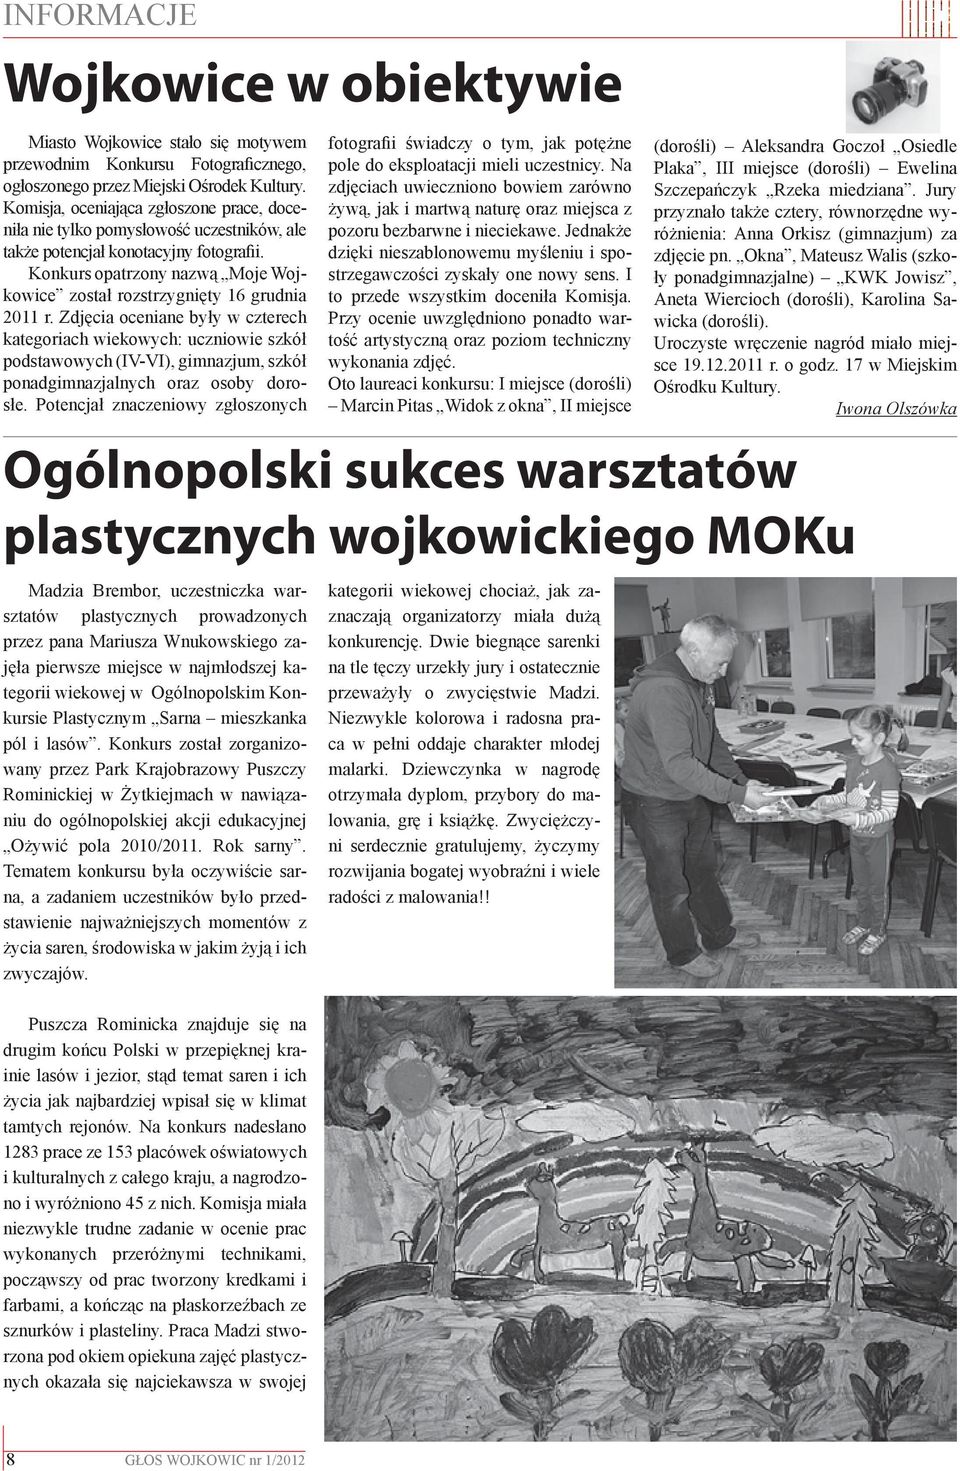 Konkurs opatrzony nazwą Moje Wojkowice został rozstrzygnięty 16 grudnia 2011 r.